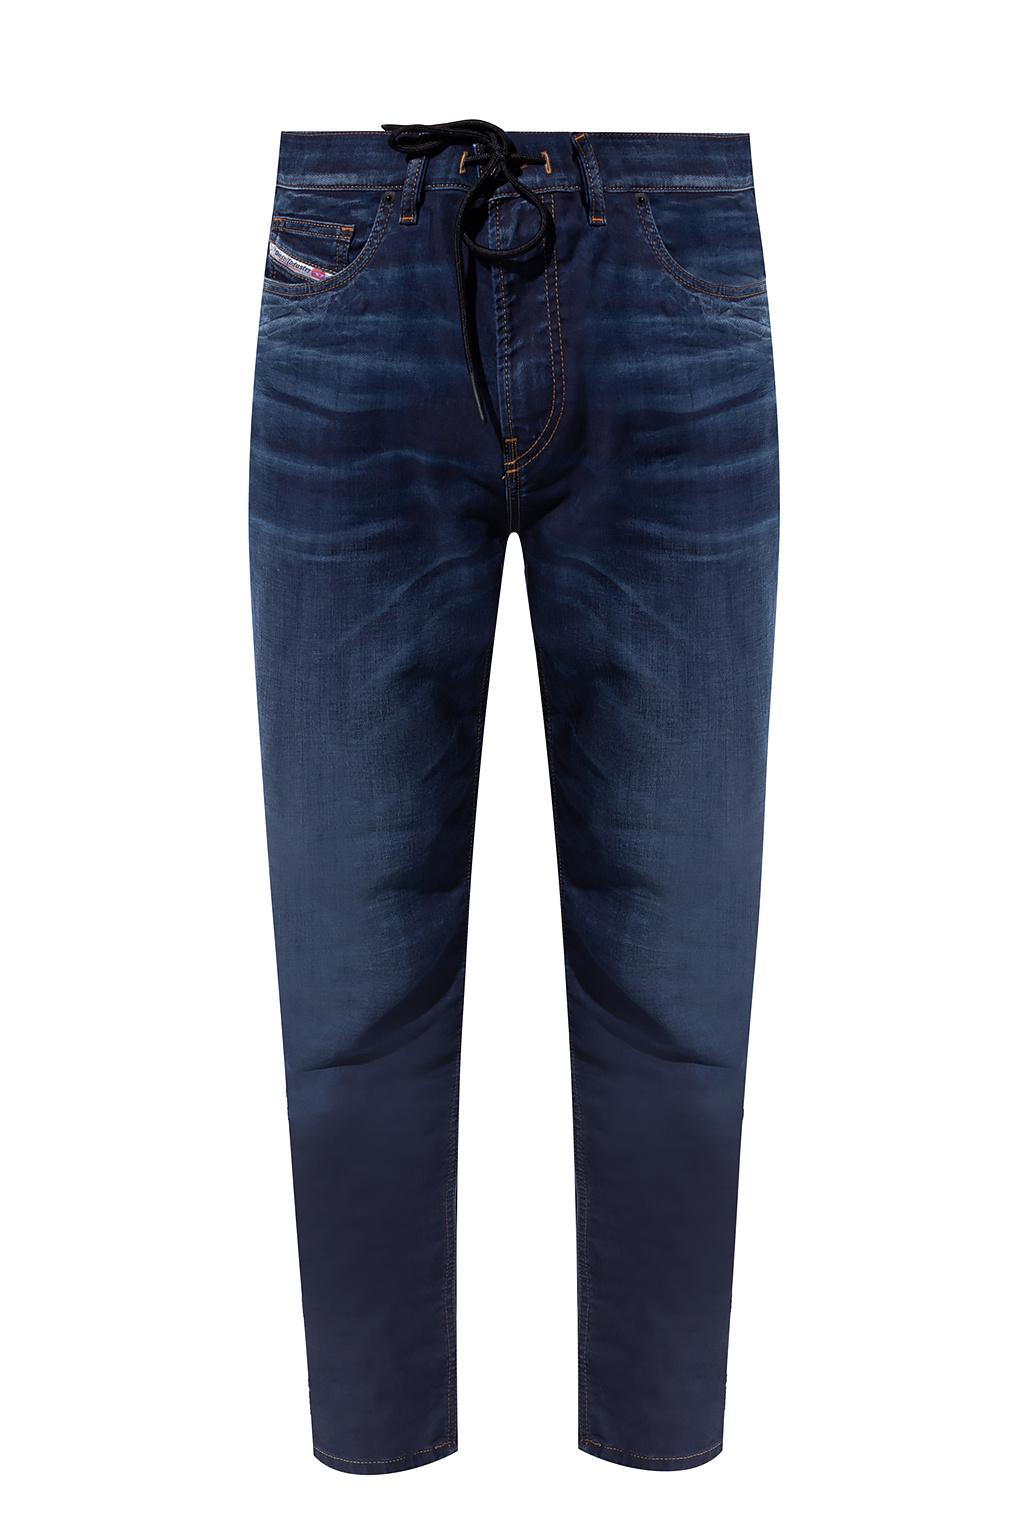 - print - leopard Vider jeans mini Tommy dress Jogg\' - Czechia Diesel \'D blue IetpShops Navy Hilfiger